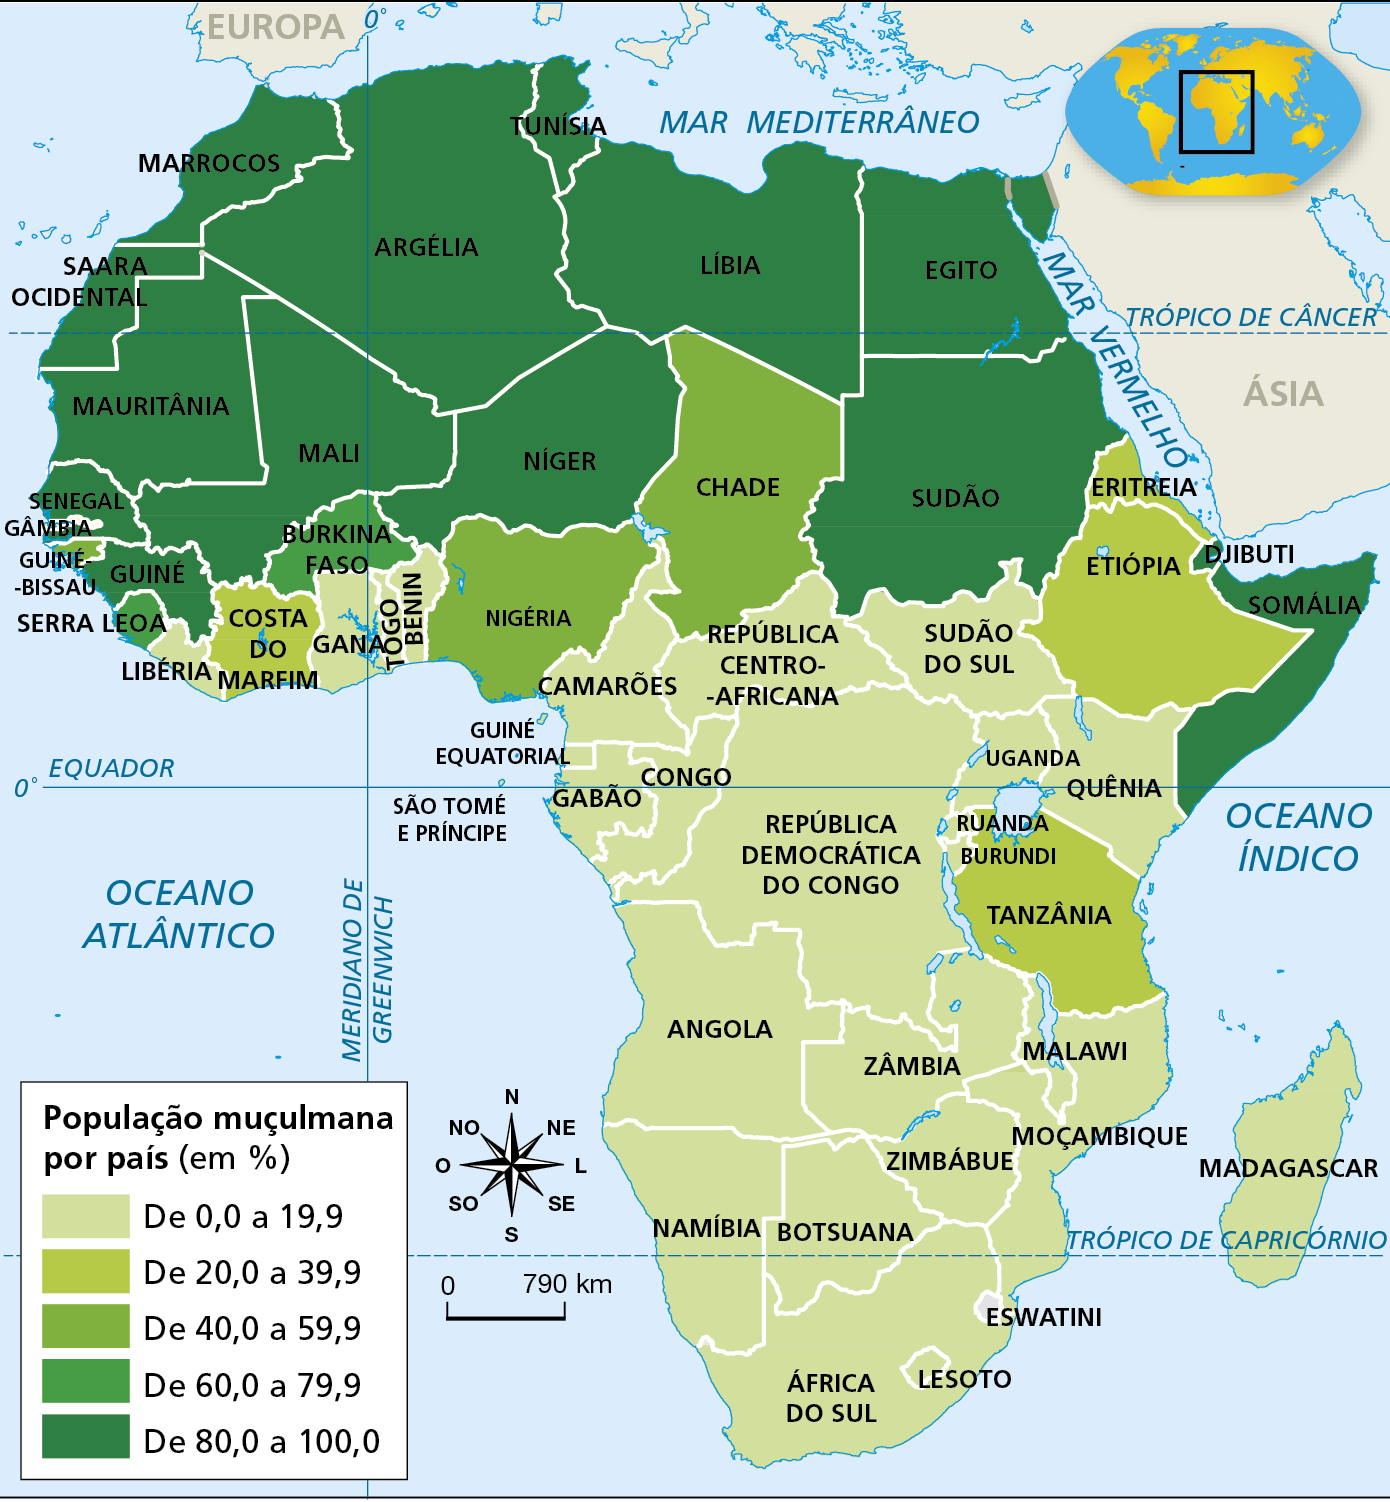 Mapa. África: percentual de muçulmanos (2020)
Mapa temático do continente africano indicando o percentual da população muçulmana presente em cada país. Há cinco categorias, diferenciadas por tons de verde, sendo os tons mais claros para representar valores menores e os mais escuros para representar valores maiores.
De 0,0 a 19,9 por cento: Libéria, Gana, Togo, Benin, Camarões, Guiné Equatorial, São Tomé e Príncipe, Gabão, Congo, Angola, Namíbia, África do Sul, Lesoto, Botsuana, Zimbábue, Zâmbia, Moçambique, Madagascar, Malawi, Quênia, Ruanda, Burundi, Uganda, Sudão do Sul, República Centro-Africana, República Democrática do Congo. 
De 20,0 a 39,9 por cento: Costa do Marfim, Guiné-Bissau, Eritreia, Etiópia, Tanzânia. 
De 40,0 a 59,9 por cento: Nigéria, Chade. 
De 60,0 a 79,9 por cento: Burkina Faso. 
De 80,0 a 100,0 por cento: Guiné, Senegal, Mauritânia, Saara Ocidental, Marrocos, Mali, Argélia, Tunísia, Níger, Líbia, Egito, Sudão, Djibuti, Somália. 
Na parte inferior, rosa dos ventos e escala de 0 a 790 quilômetros.